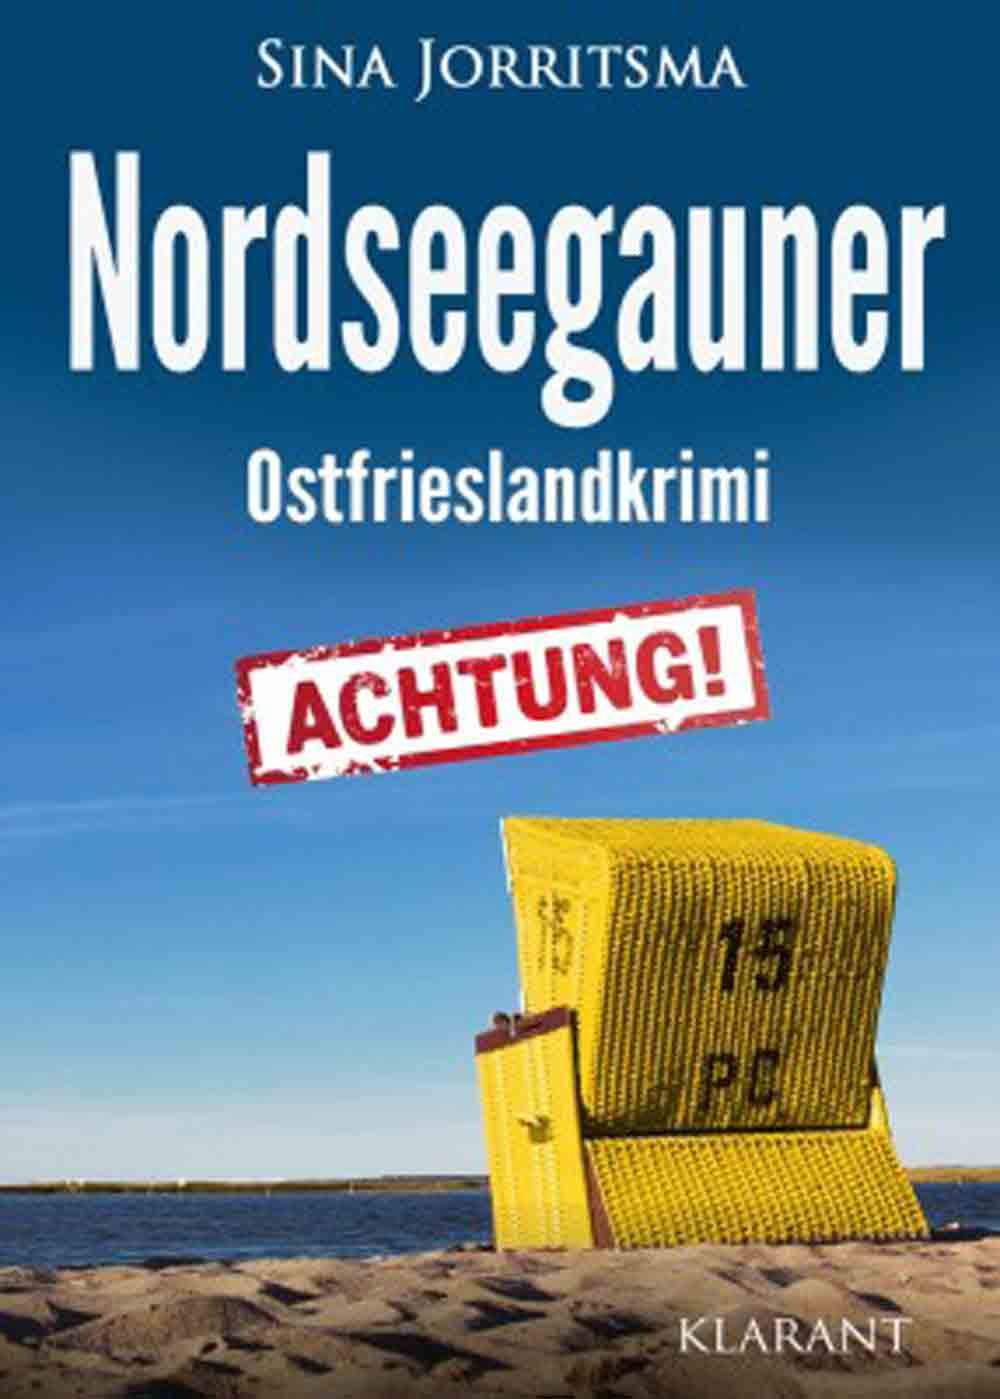 Lesetipps für Gütersloh, Ostfrieslandkrimi »Nordseegauner« von Sina Jorritsma im Klarant Verlag